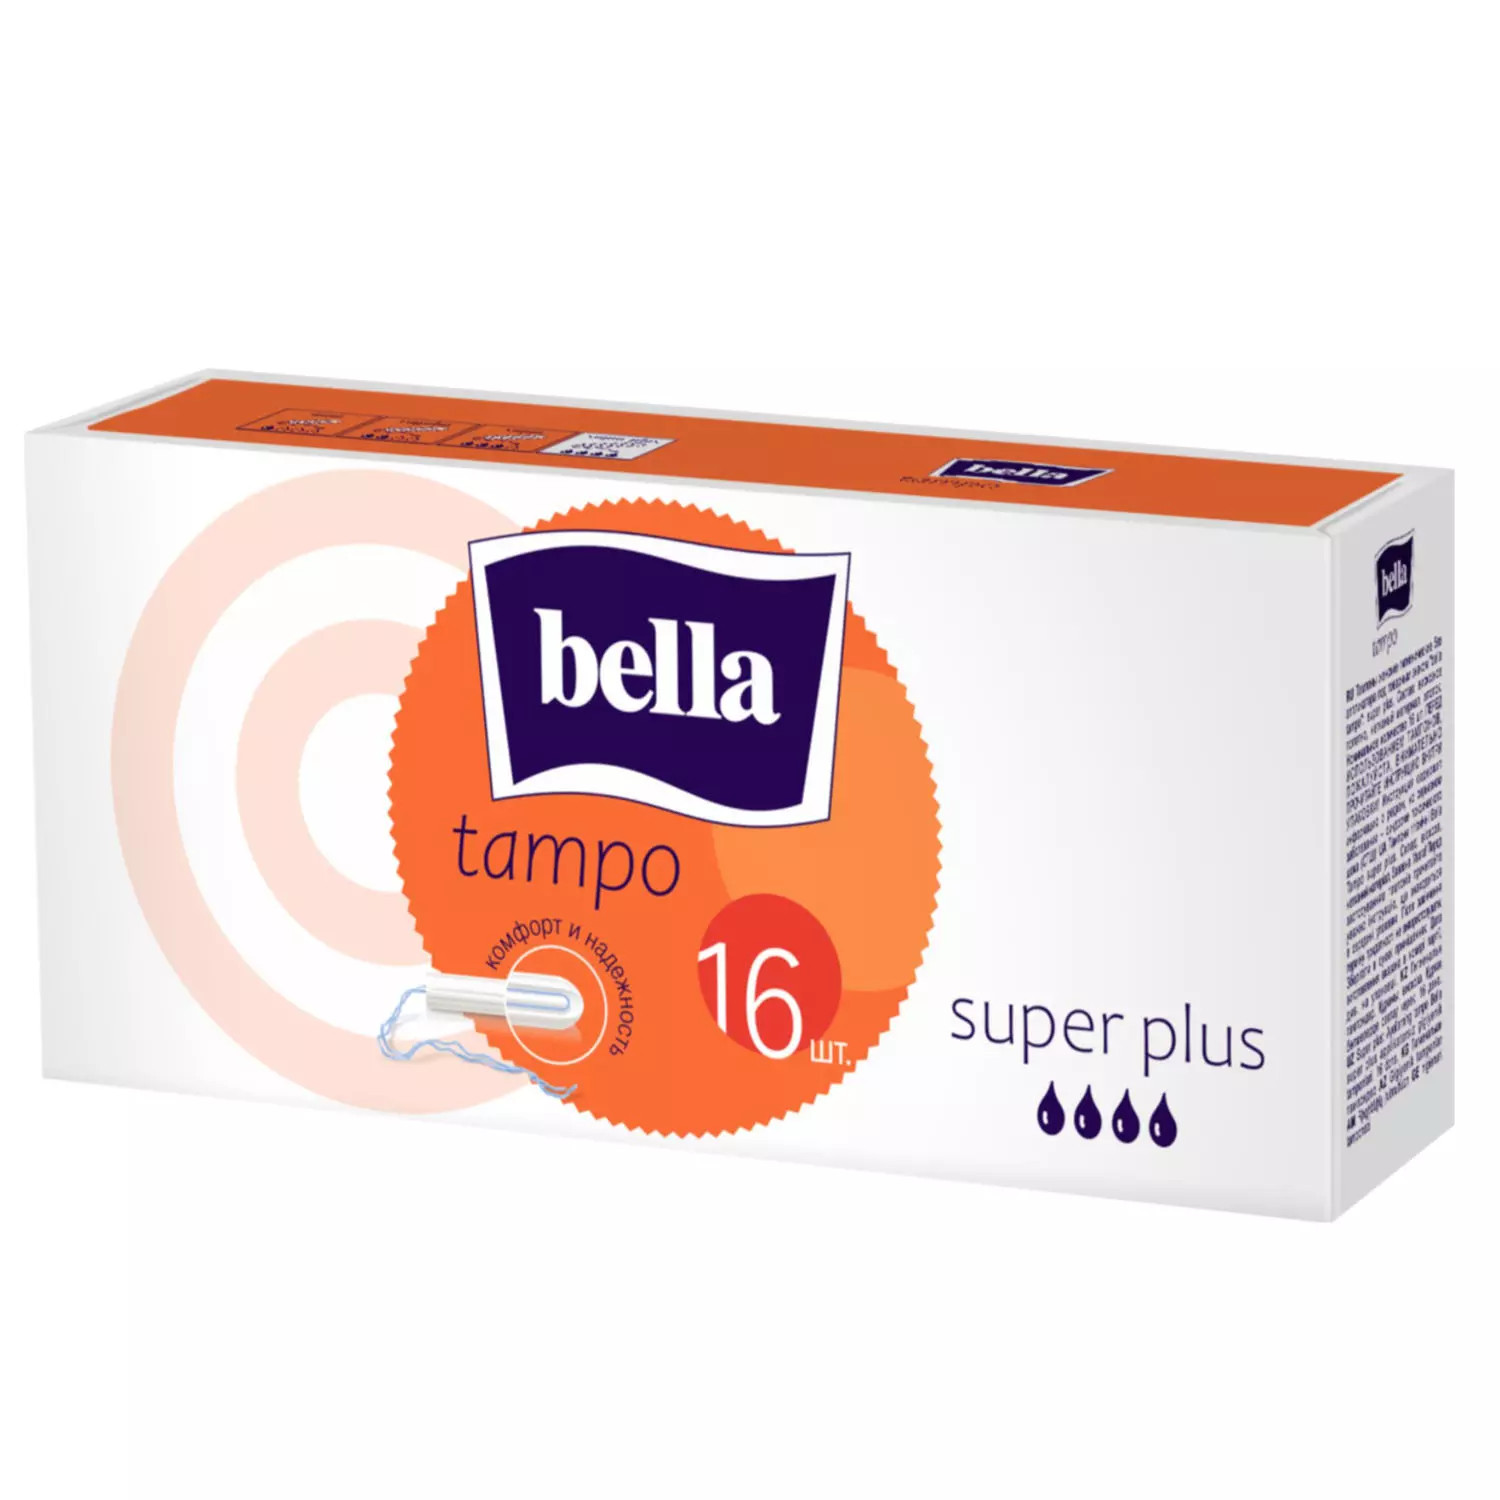 Тампоны Bella, premium comfort Super Plus без аппликатора, 16 шт bella тампоны без аппликатора premium comfort regular 16 шт